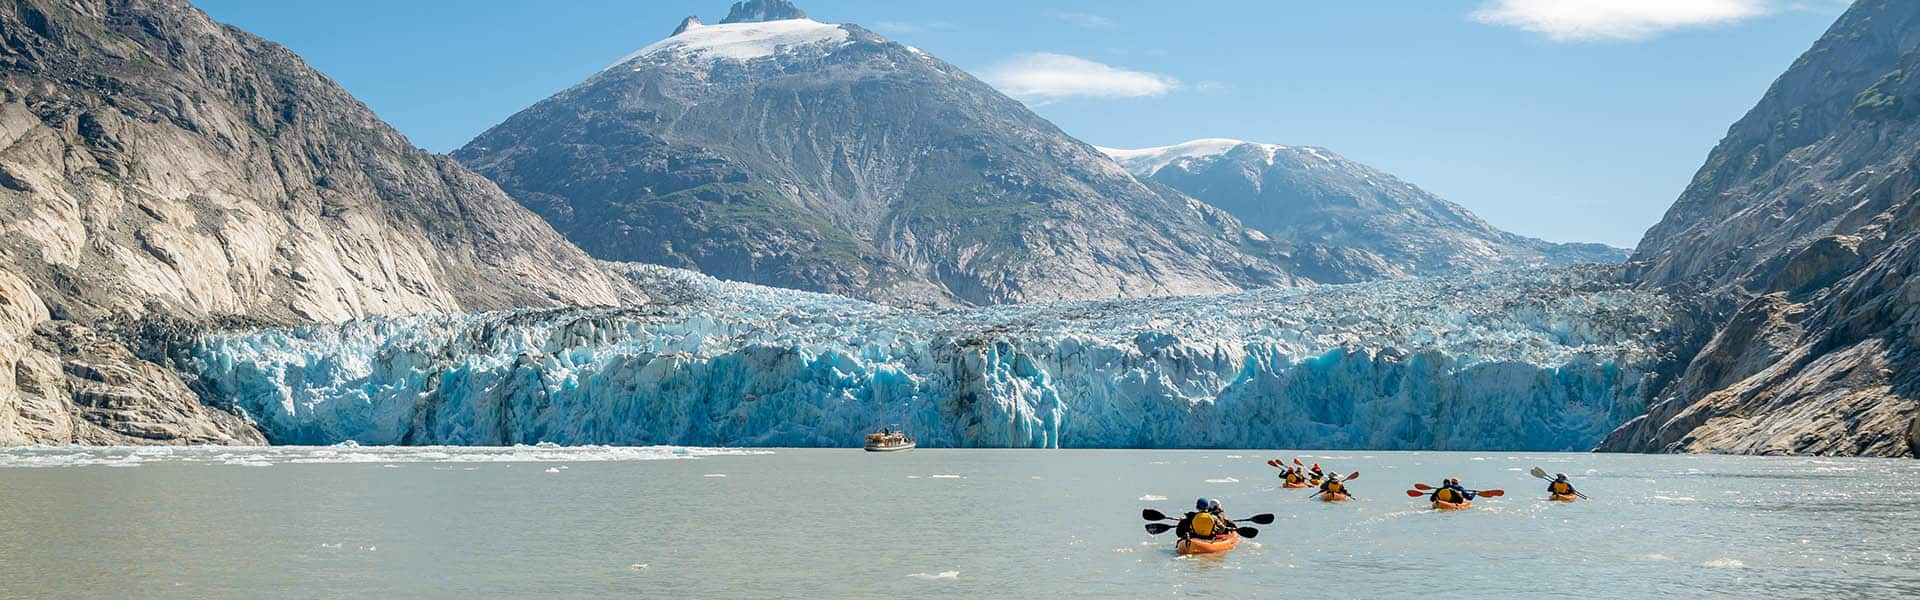 אלסקה: גליישר ביי, סקאגוויי וג'ונו